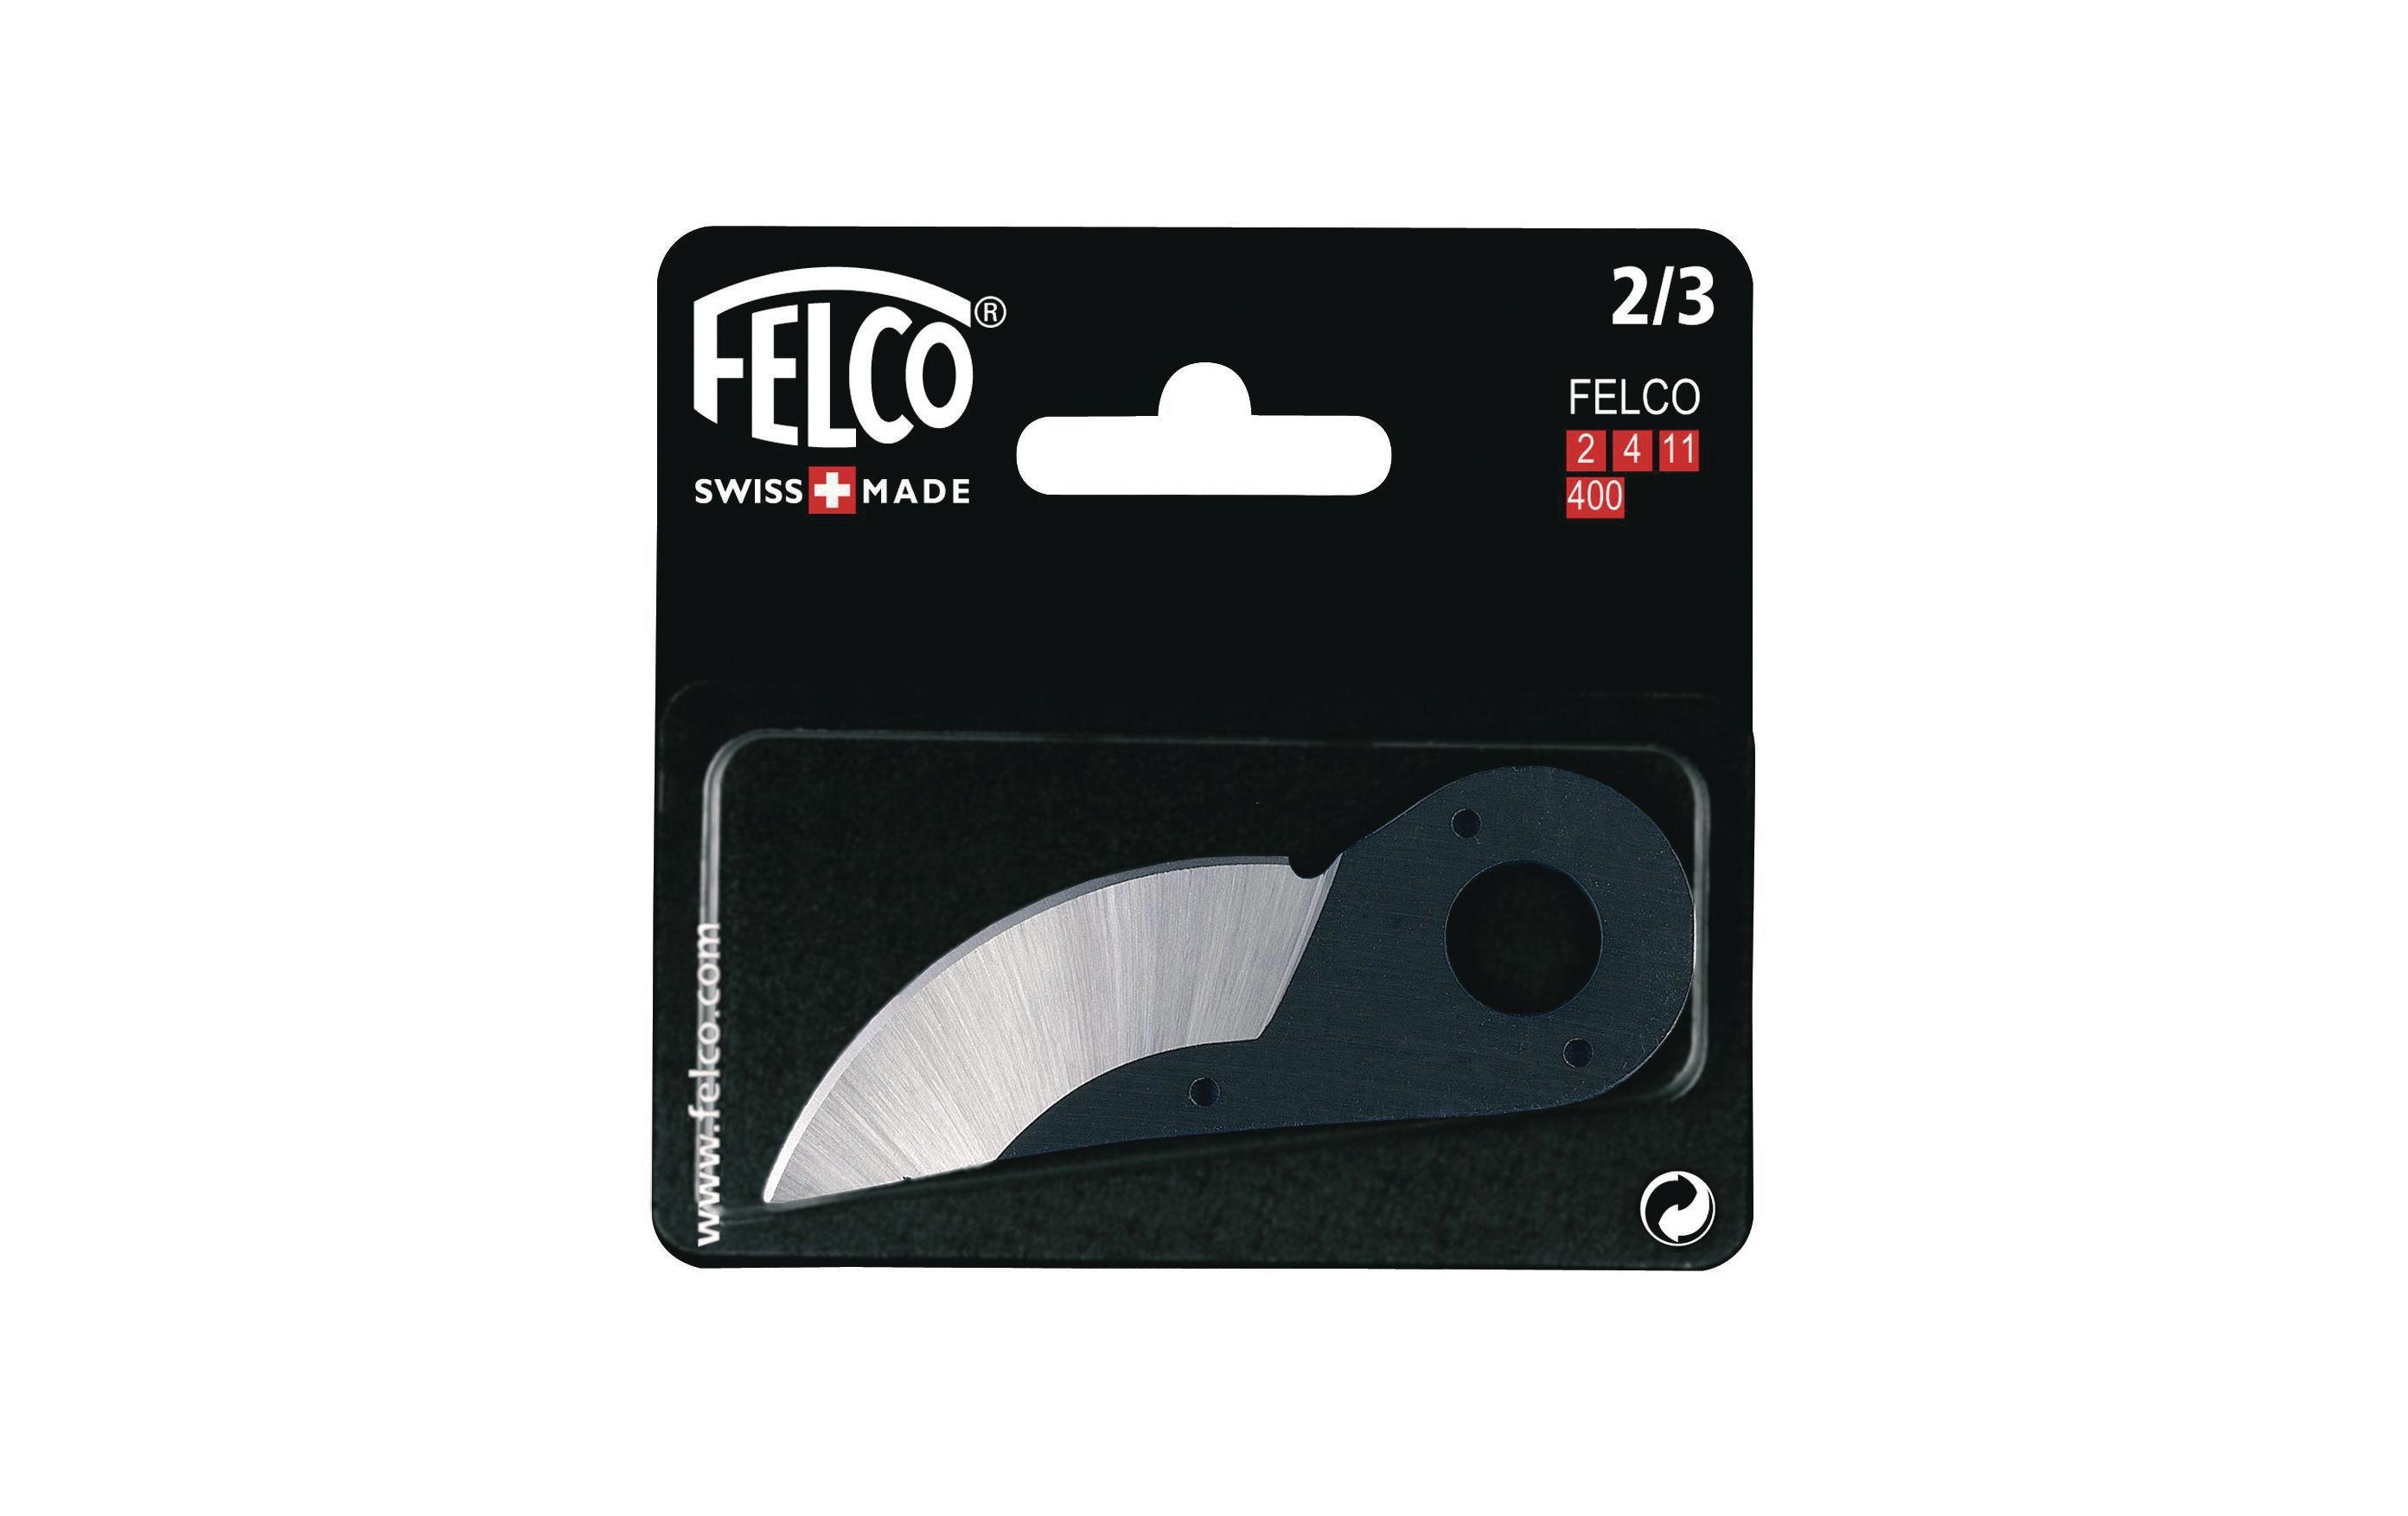 Felco Klinge passend zu Felco 2, 4, 11 und 400